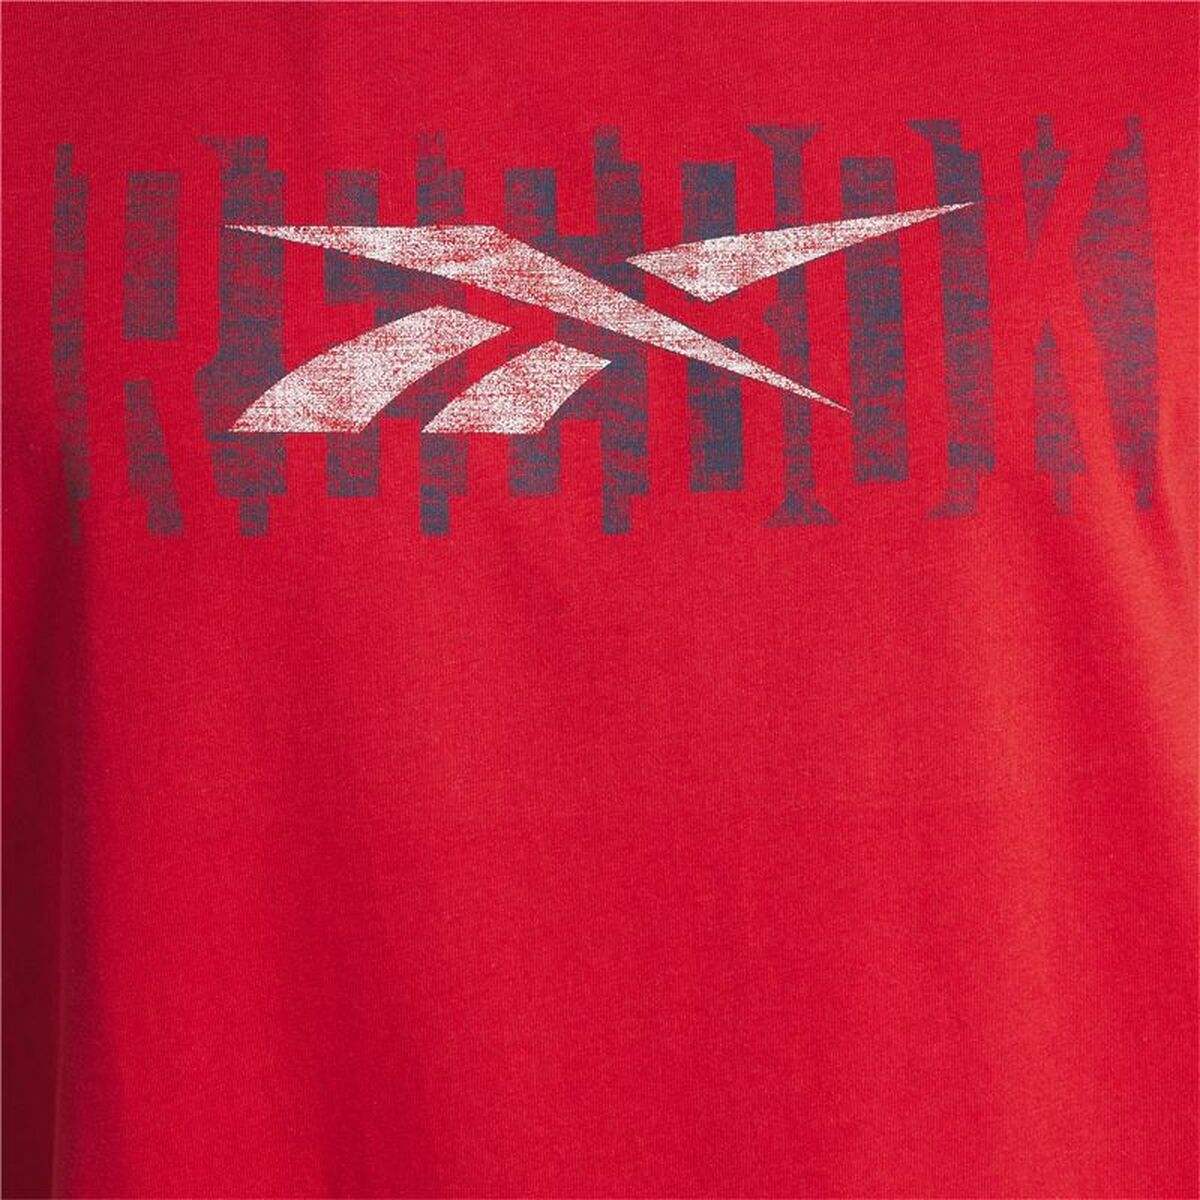 T-shirt à manches courtes homme Reebok Graphic Series Rouge - Reebok - Jardin D'Eyden - jardindeyden.fr